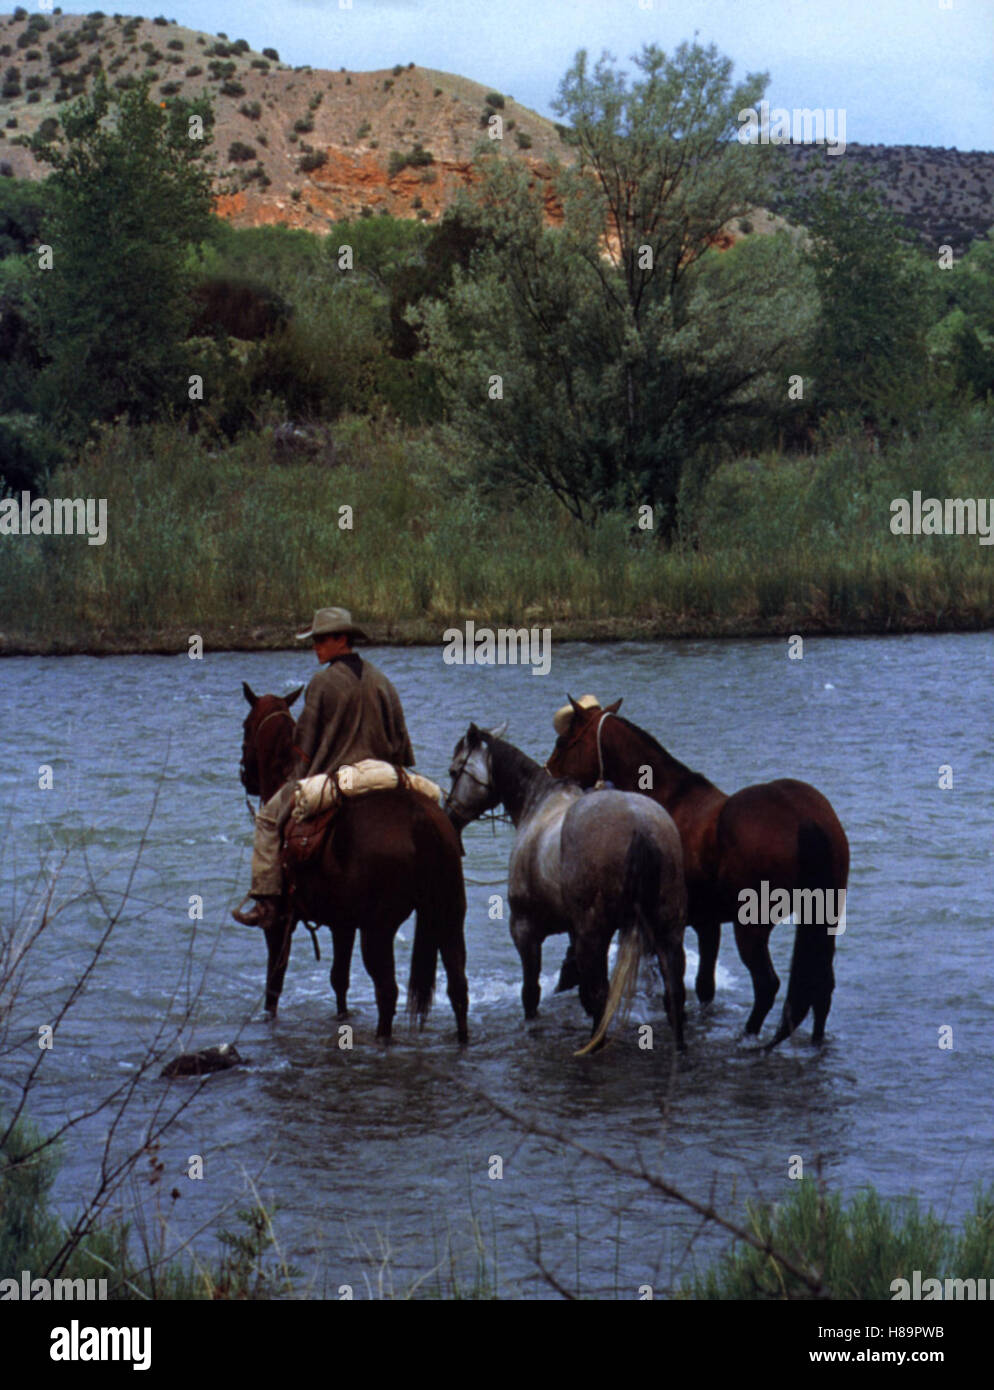 Tutti i die schönen Pferde (tutti i cavalli graziosi) USA 2000, Regie: Billy Bob Thornton, matt damon, Stichwort: Cowboy, Wasser, Fluß Foto Stock